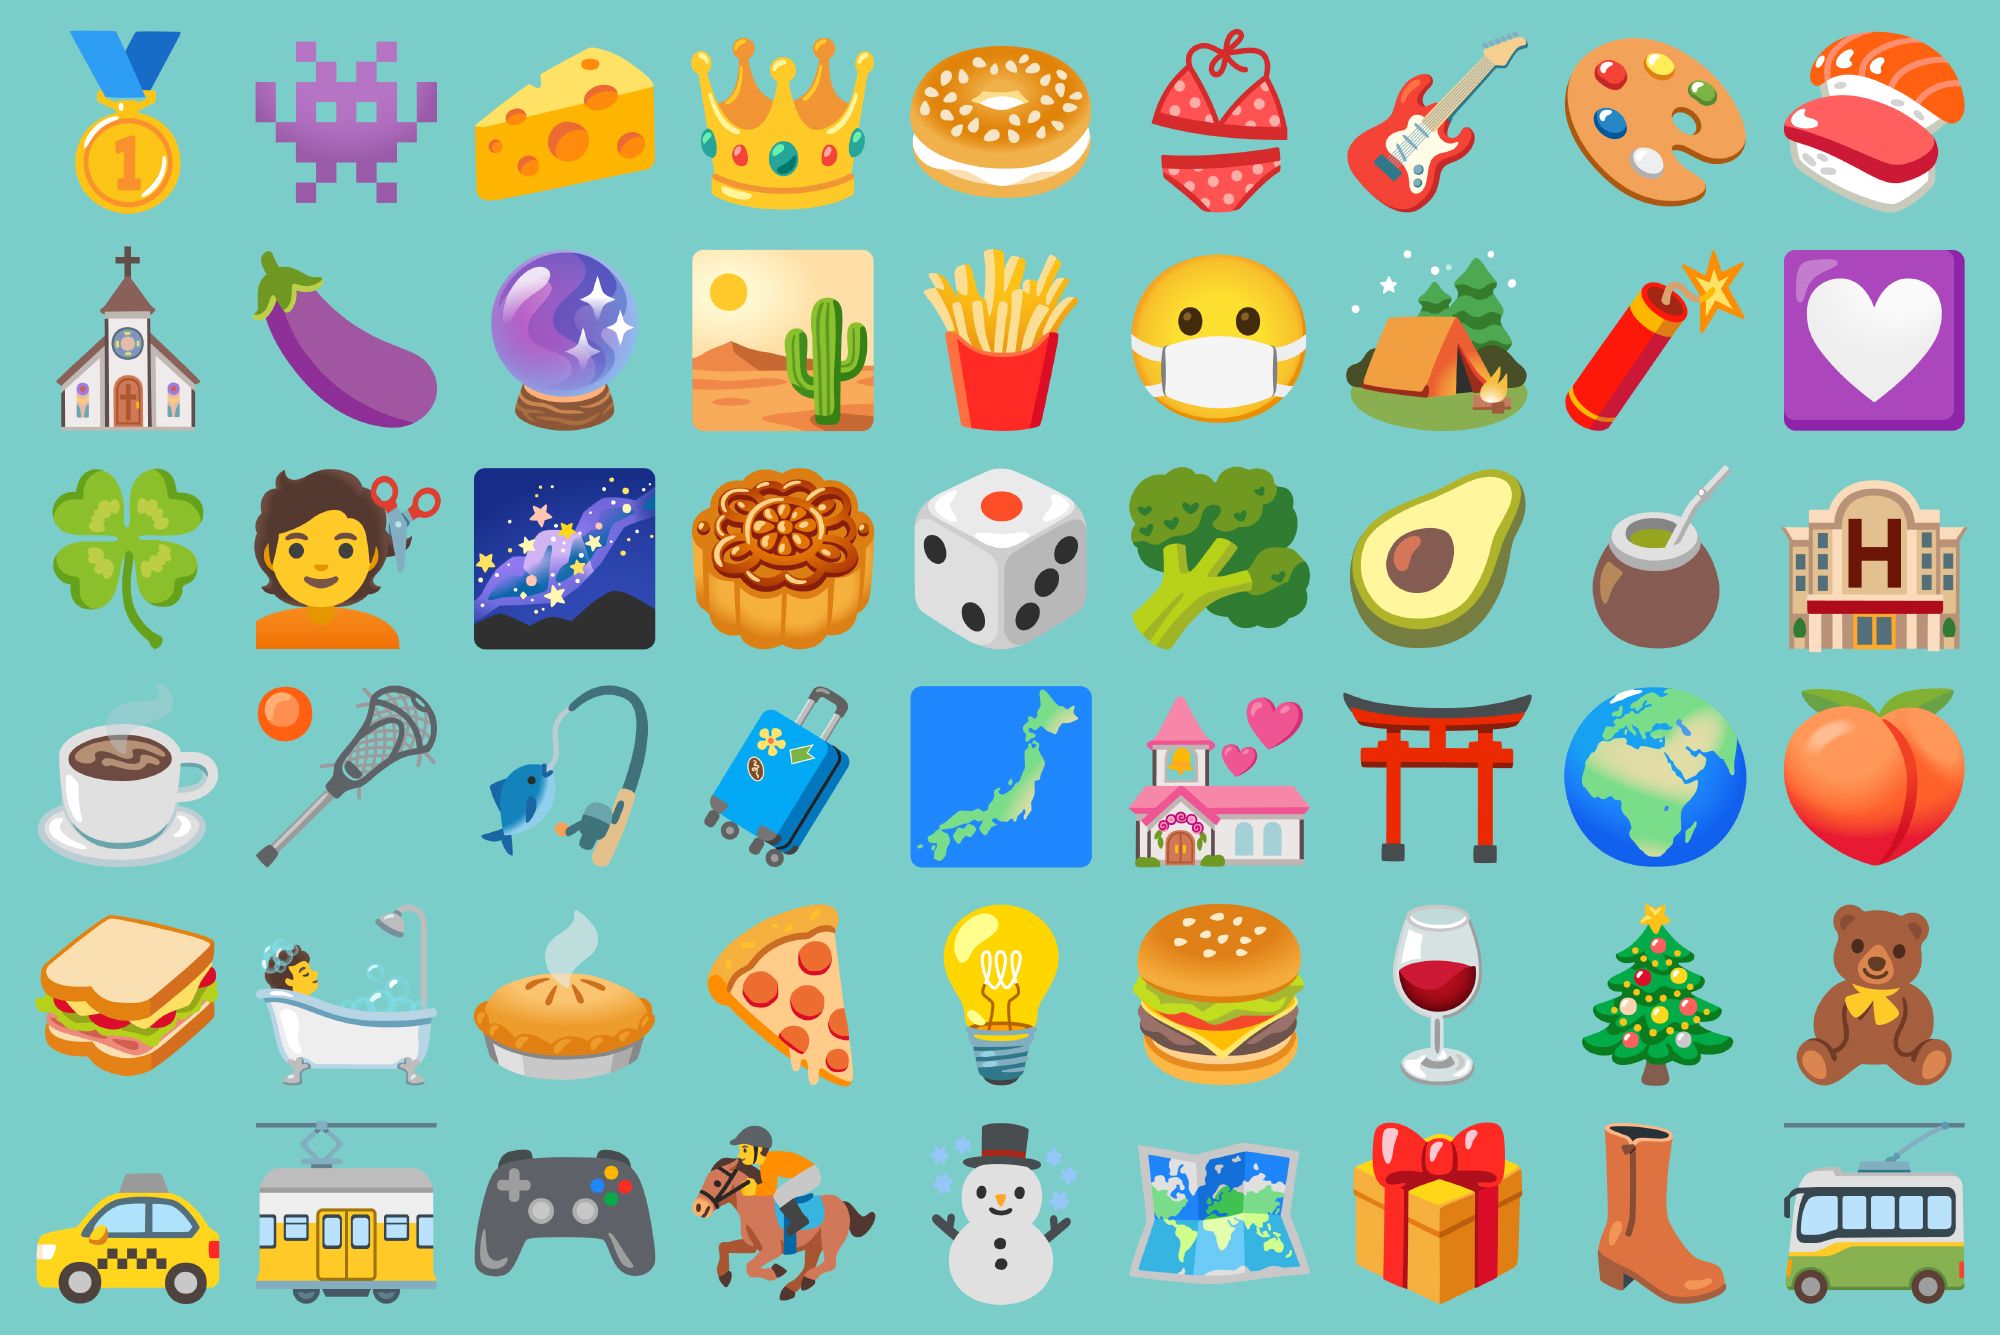 Emojis gchat Emotion Icons